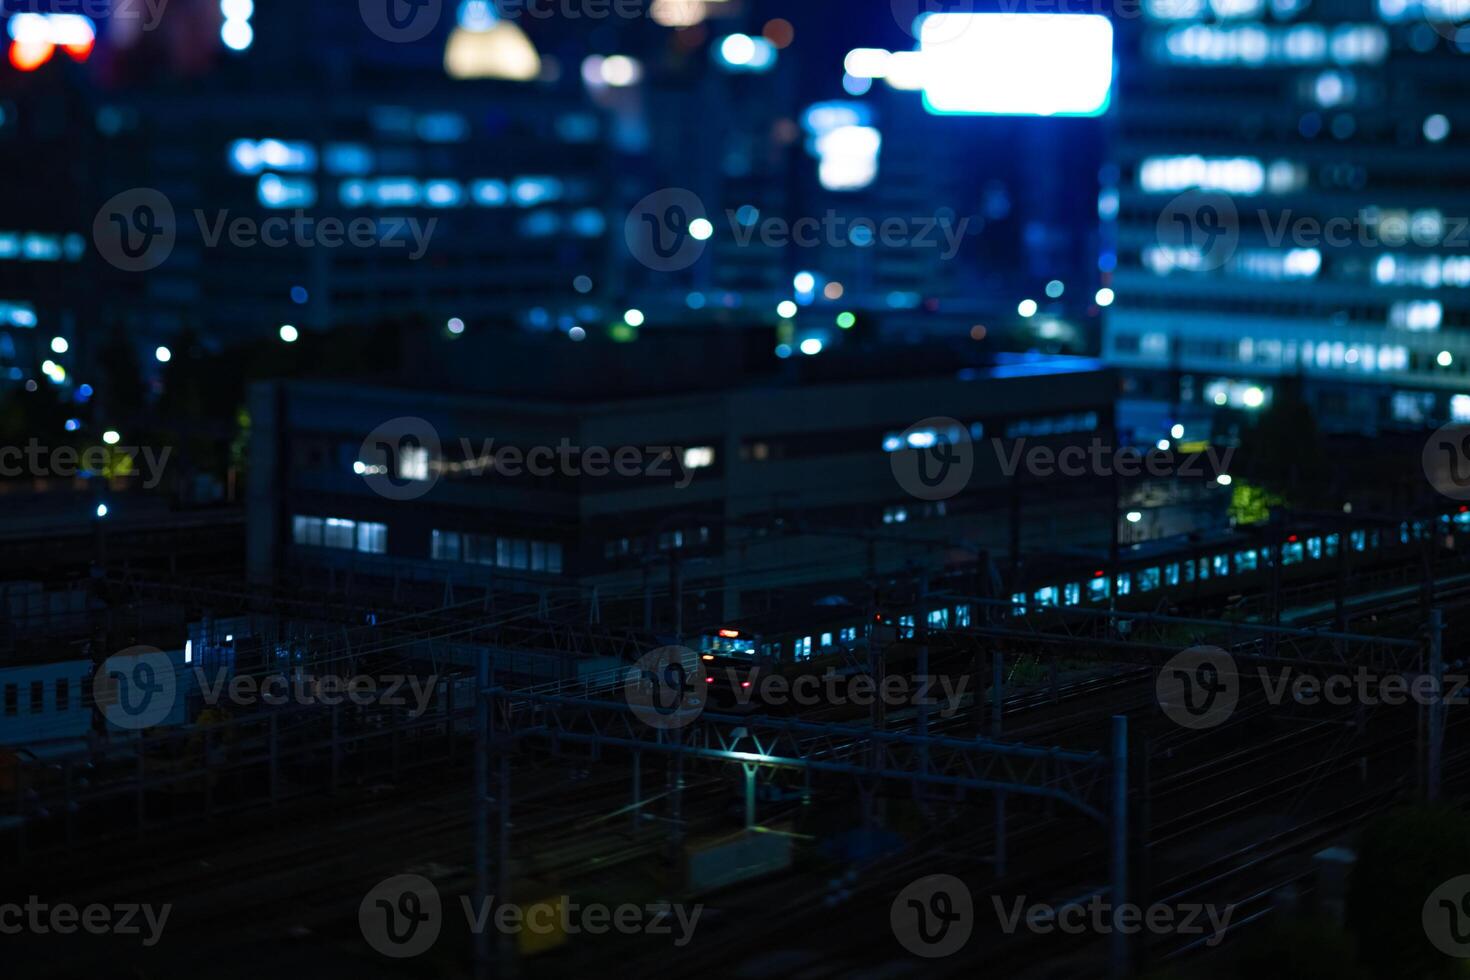 uma noite miniatura paisagem urbana dentro frente do Tóquio estação inclinação foto